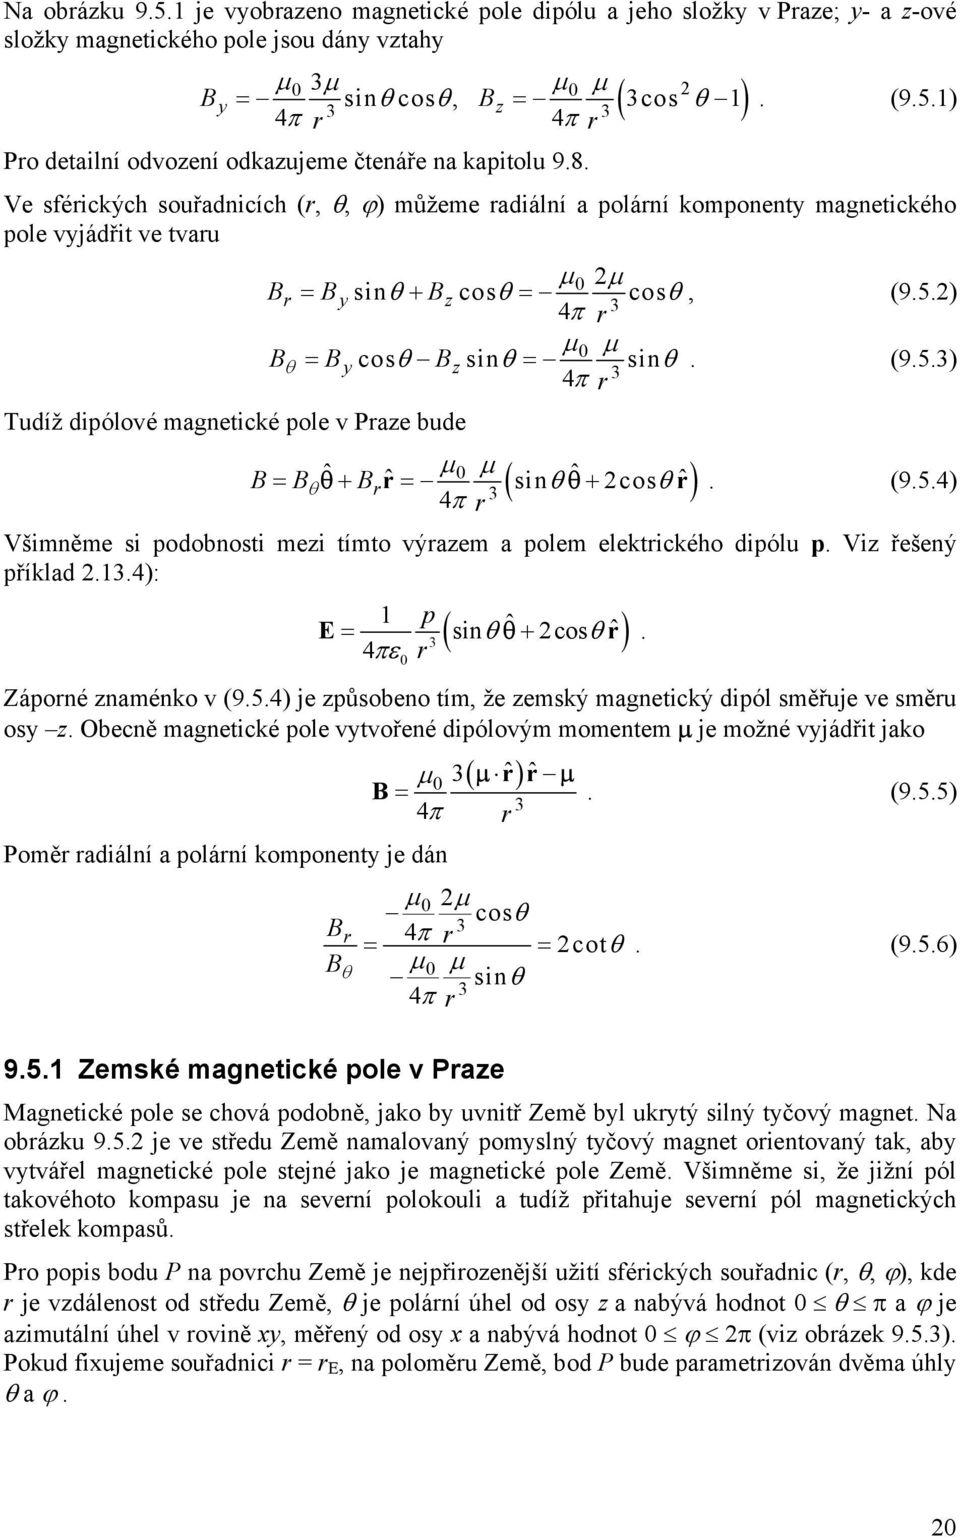 ) µ µ θ = ycosθ zsinθ = sinθ. 3 (9.5.3) Tudíž dipólové magnetické pole v Paze bude ( sinθ ˆ cosθ ˆ) ˆ µ ˆ µ = θ+ = θ +. (9.5.4) 3 Všimněme si podobnosti mezi tímto výazem a polem elektického dipólu p.